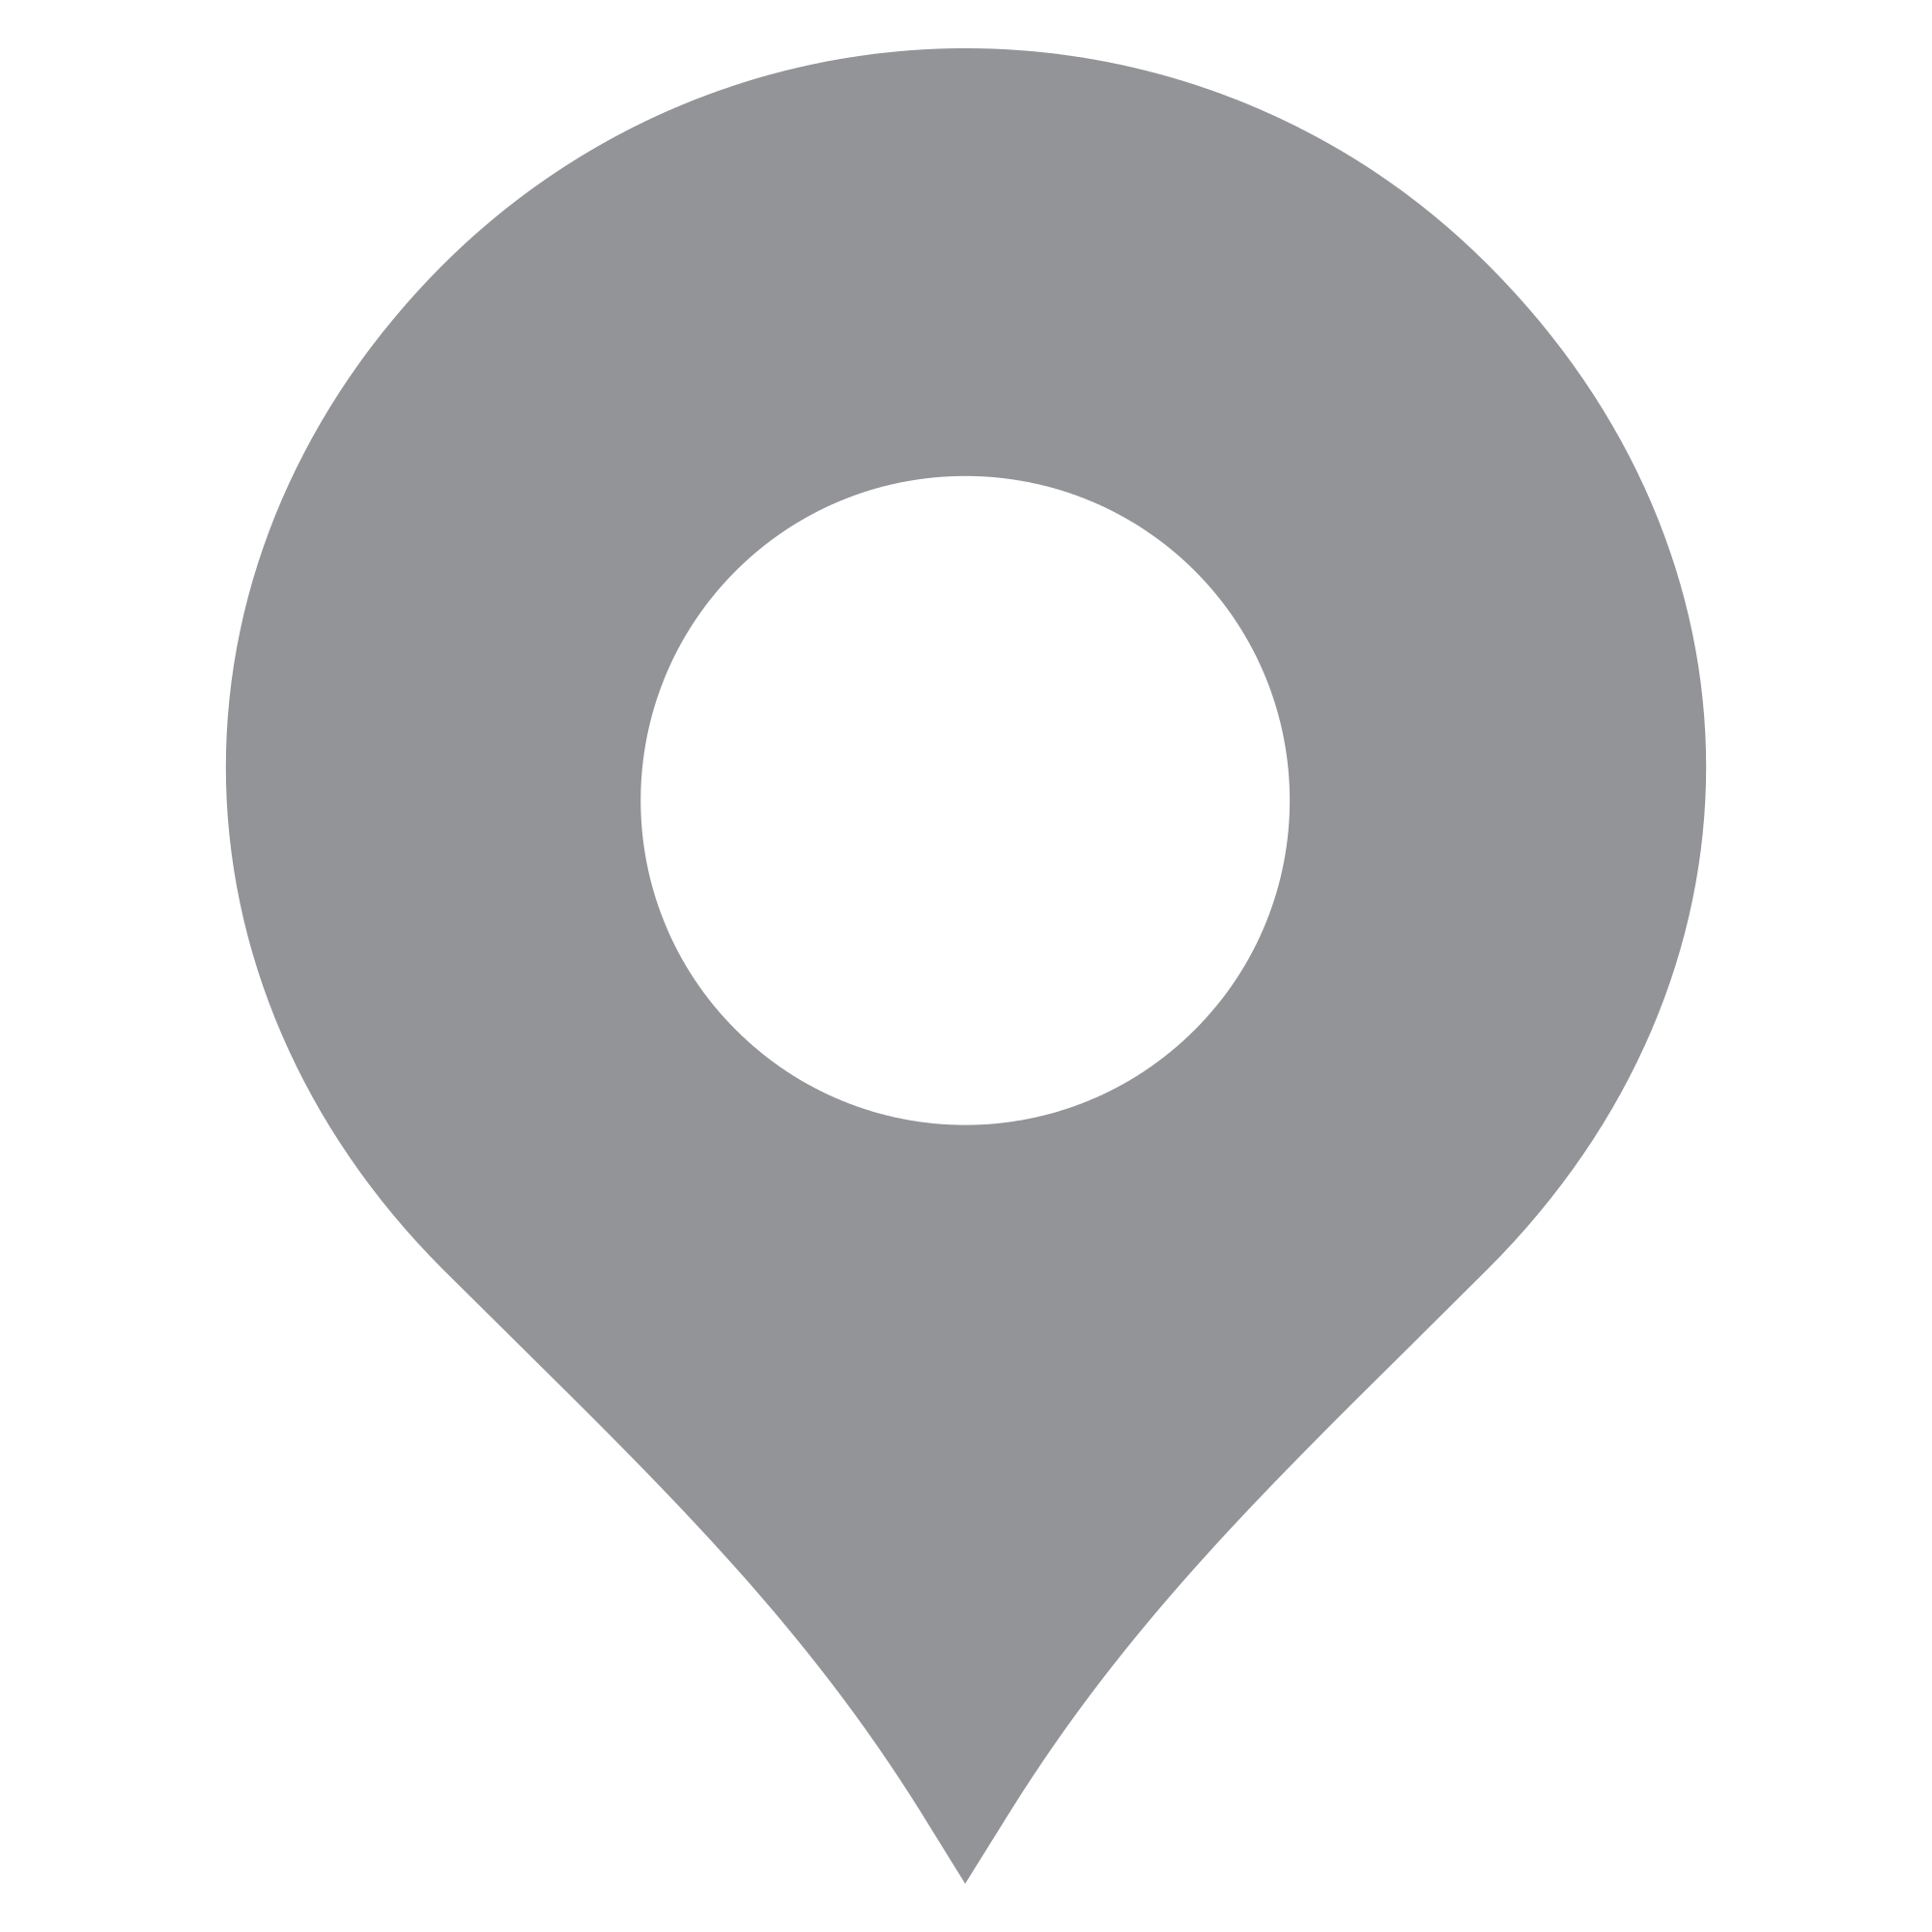 Location-Icon